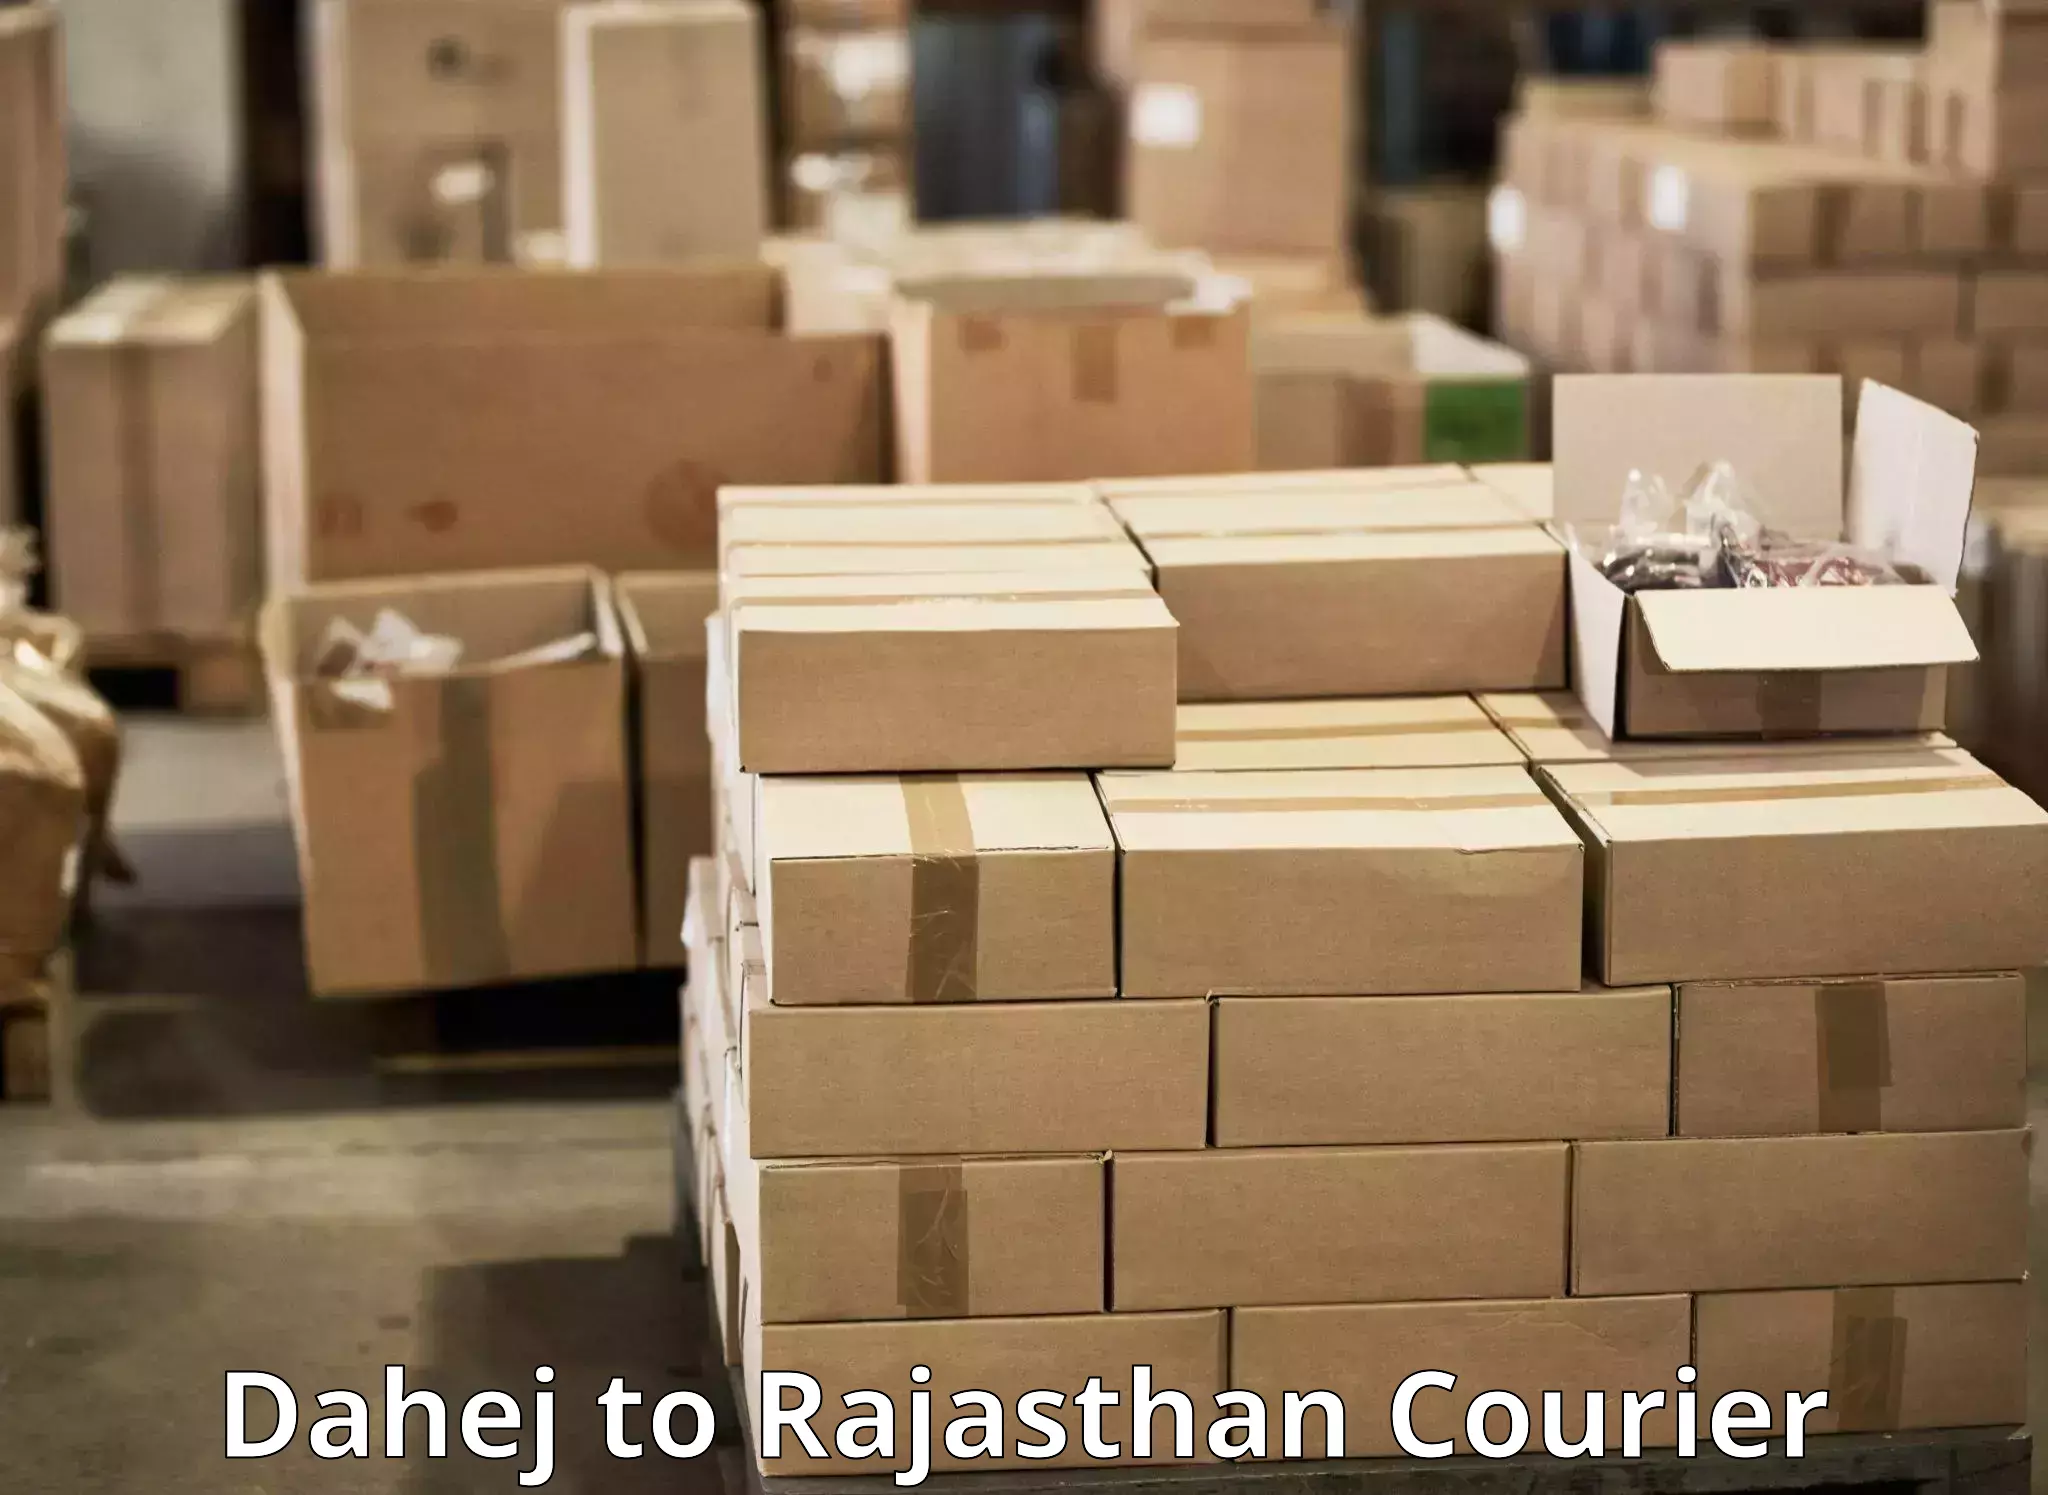 Doorstep delivery service Dahej to Bari Dholpur